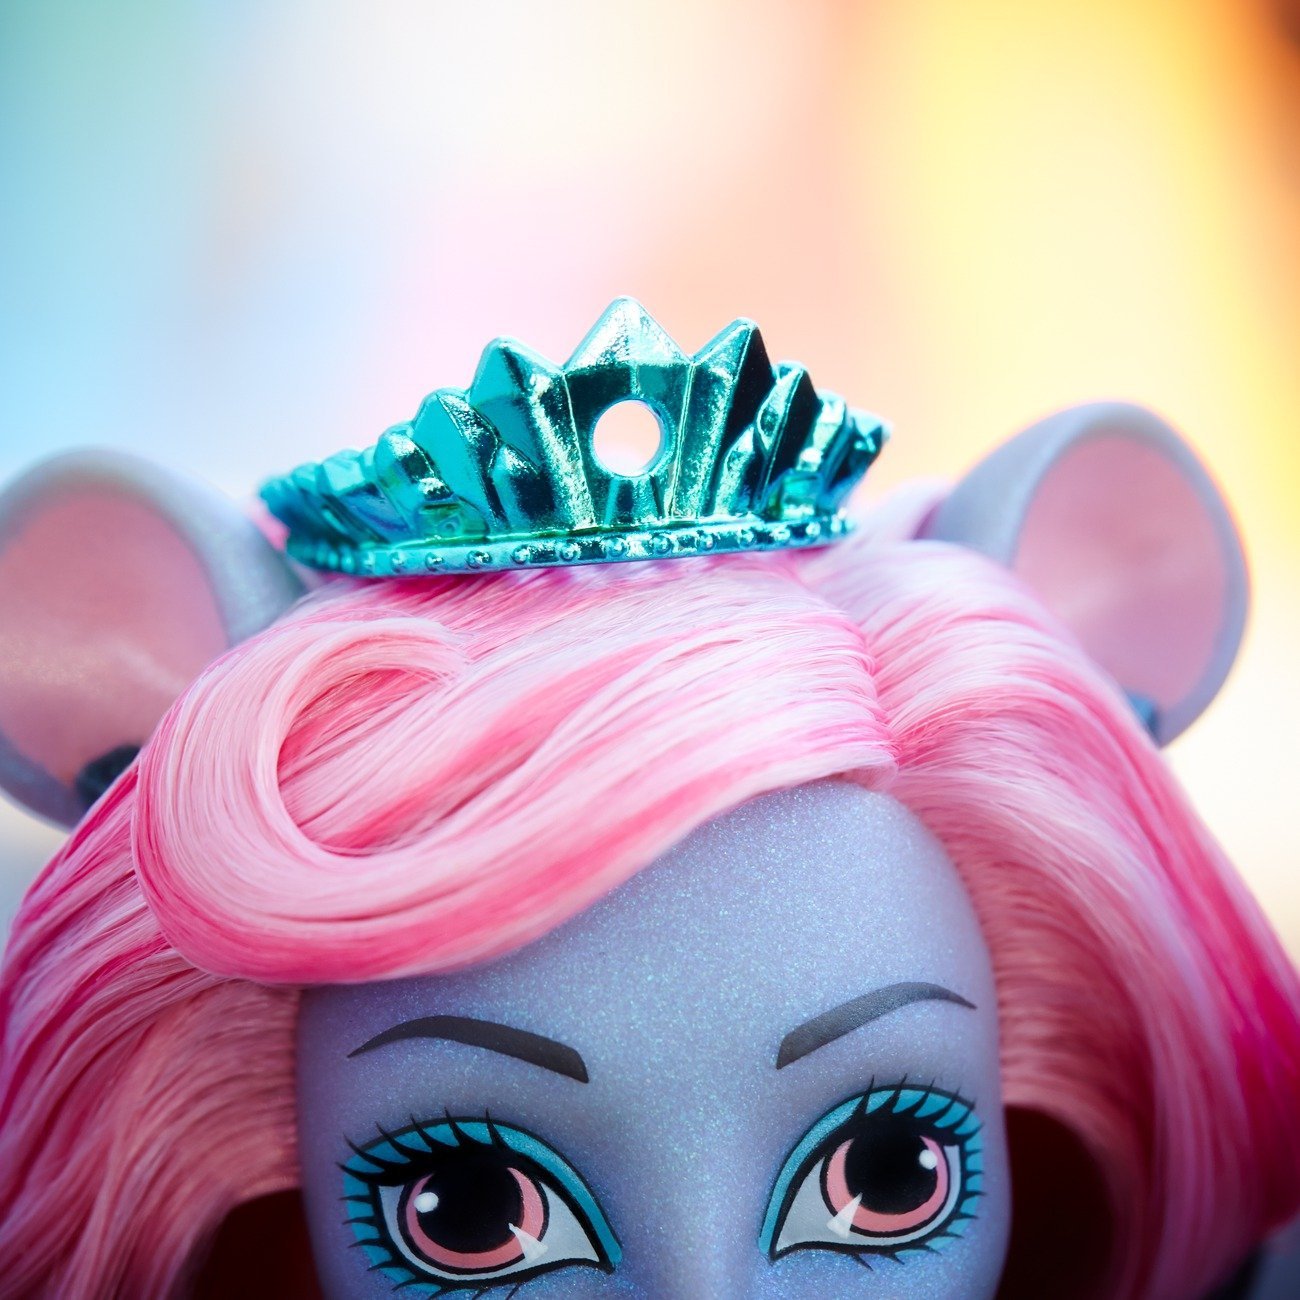 Кукла из серии Monster High Boo York, Boo York - Мауседес Кинг  